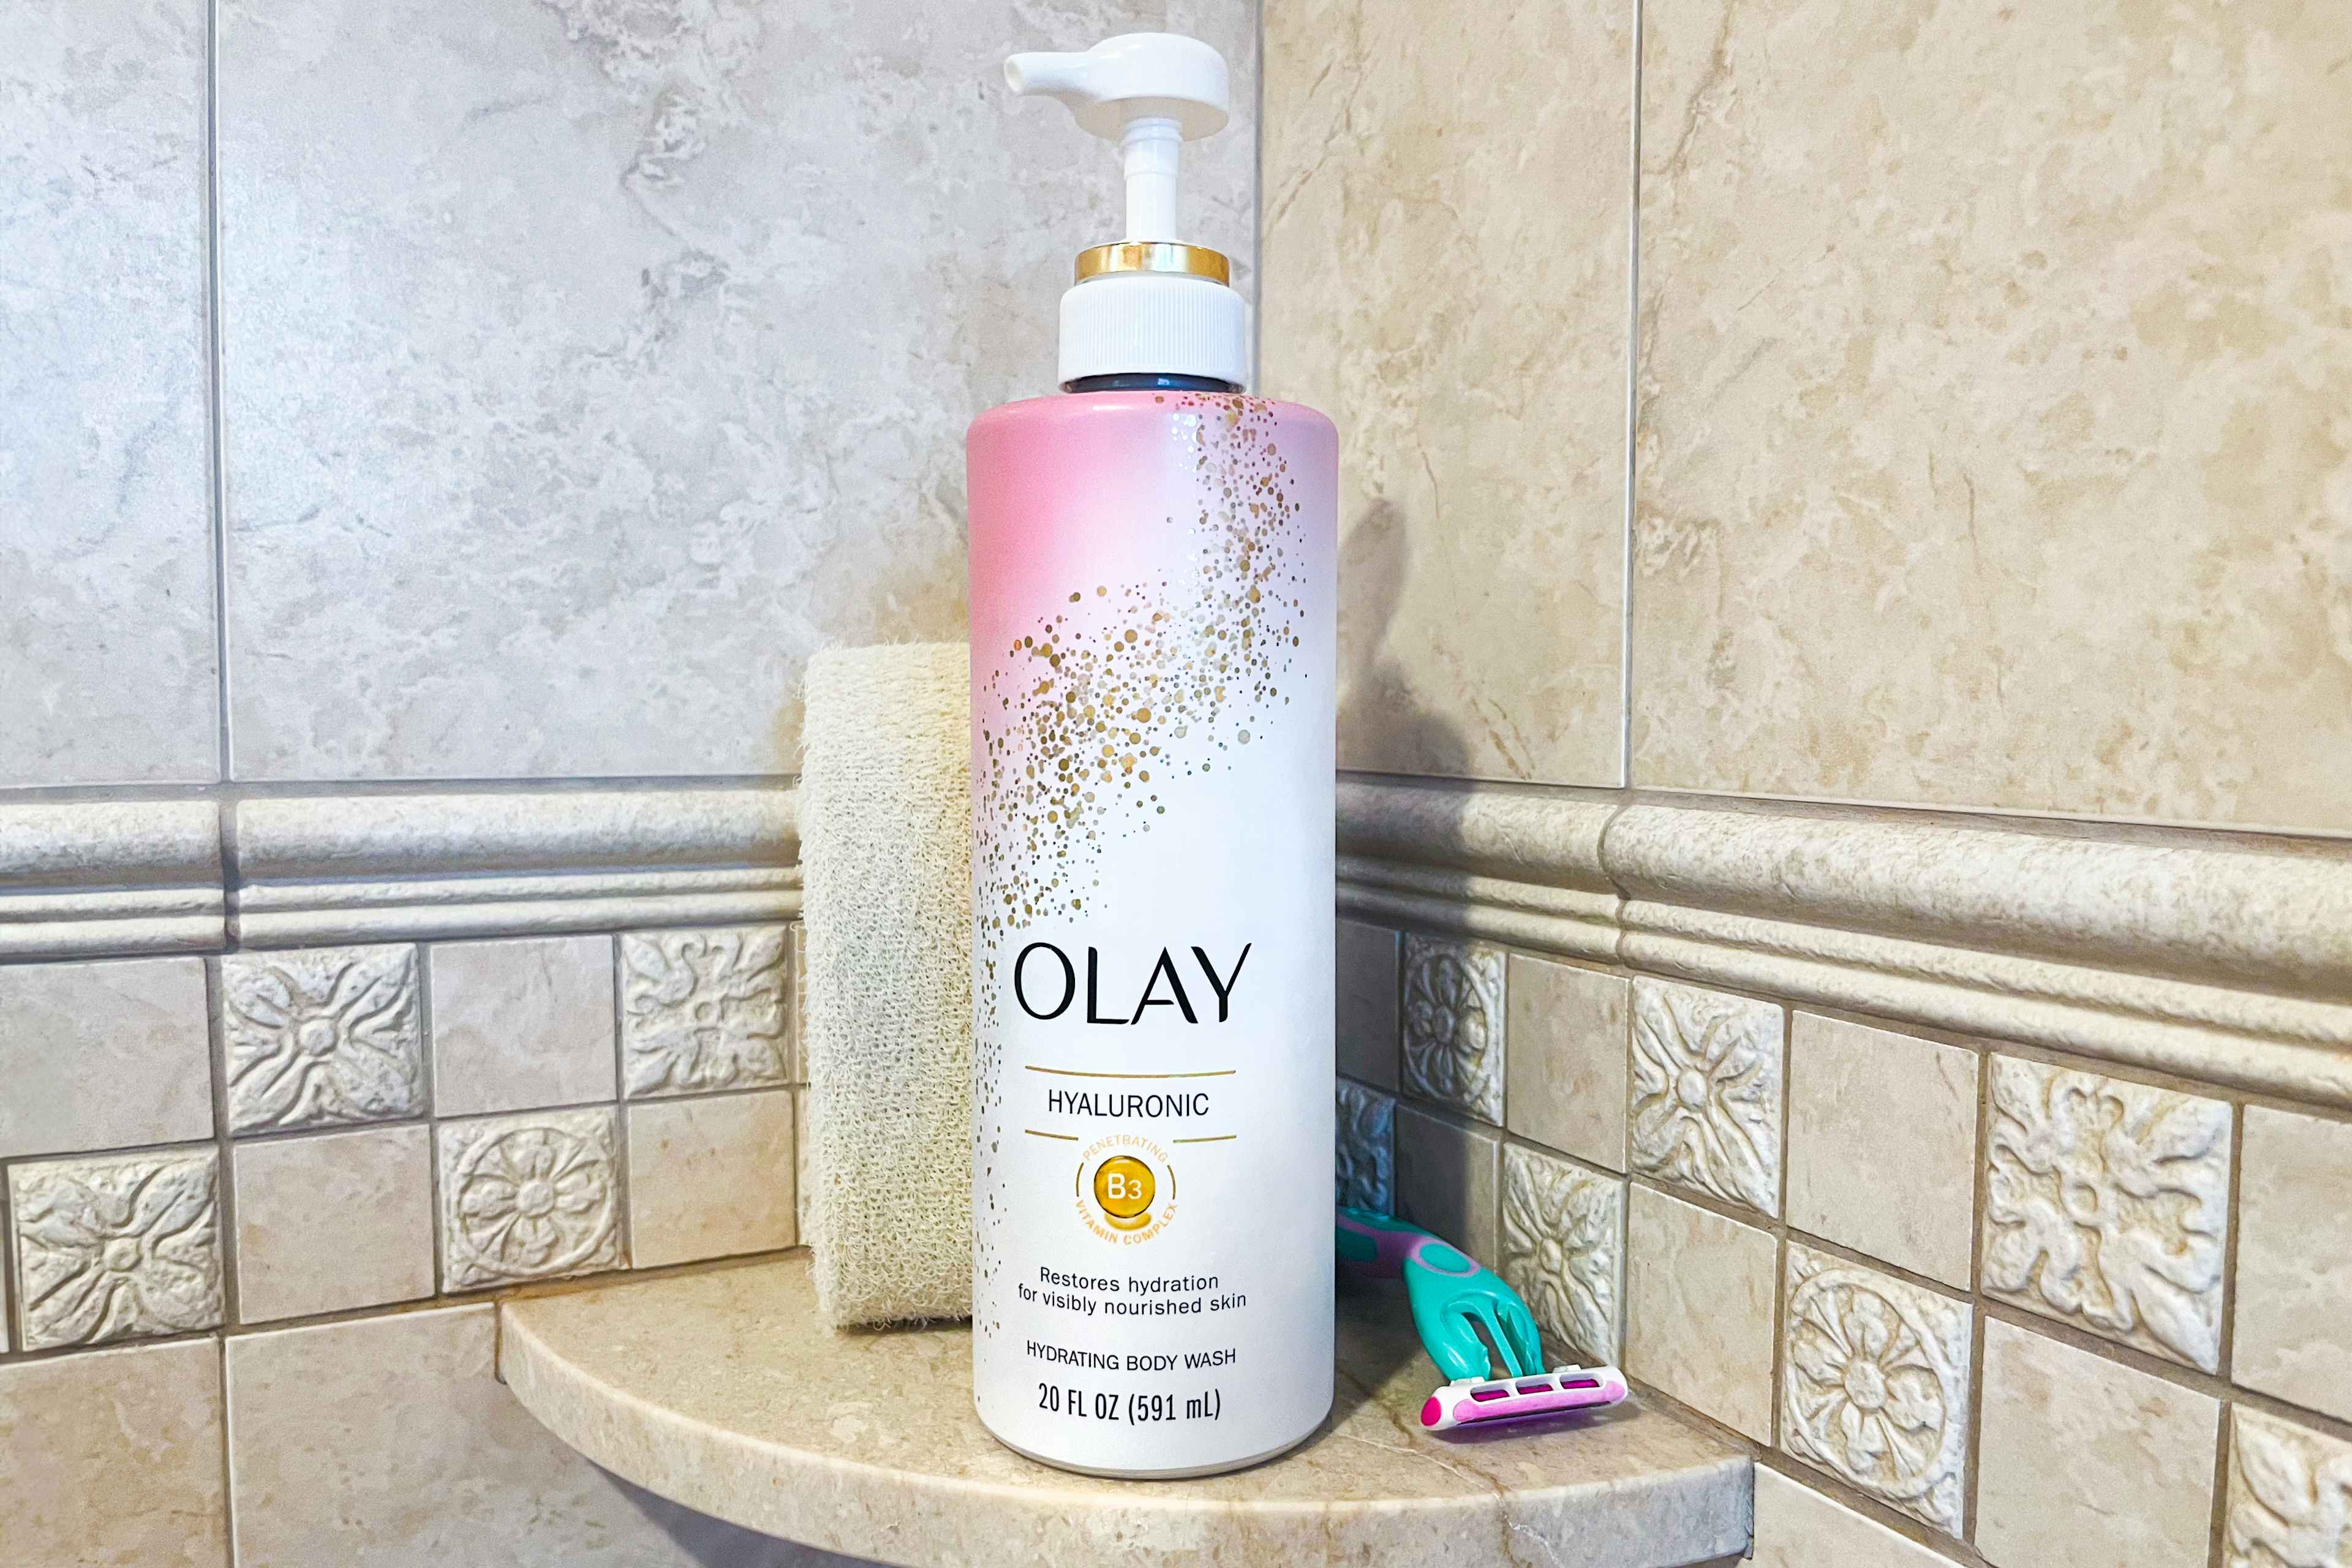 Olay body wash on a shower shelf